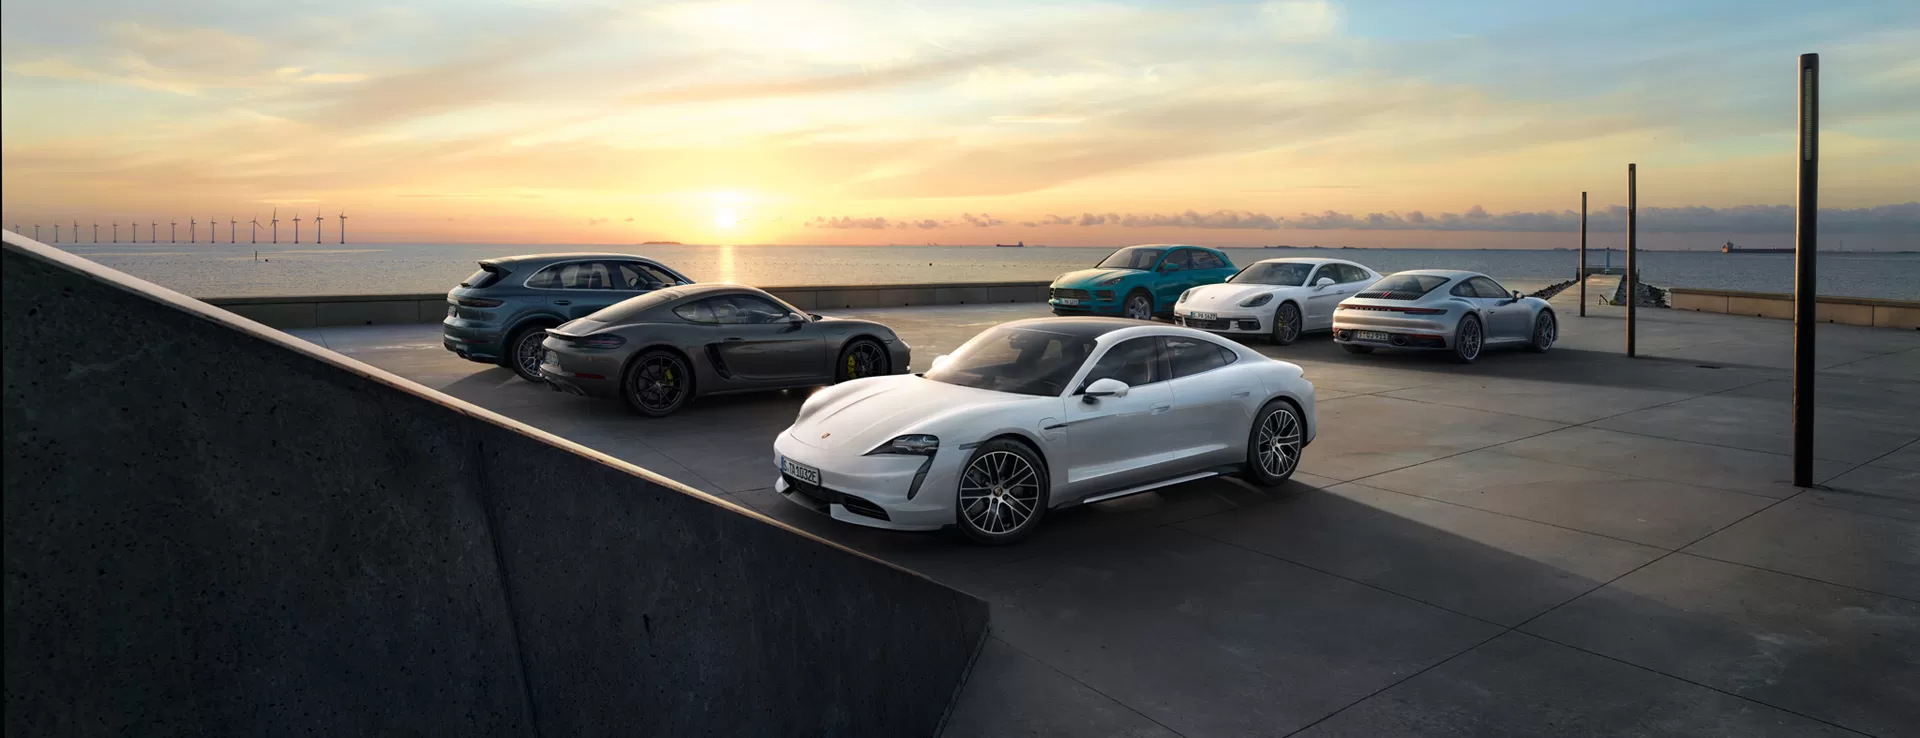 Предложения месяца на покупку автомобилей Porsche в наличии